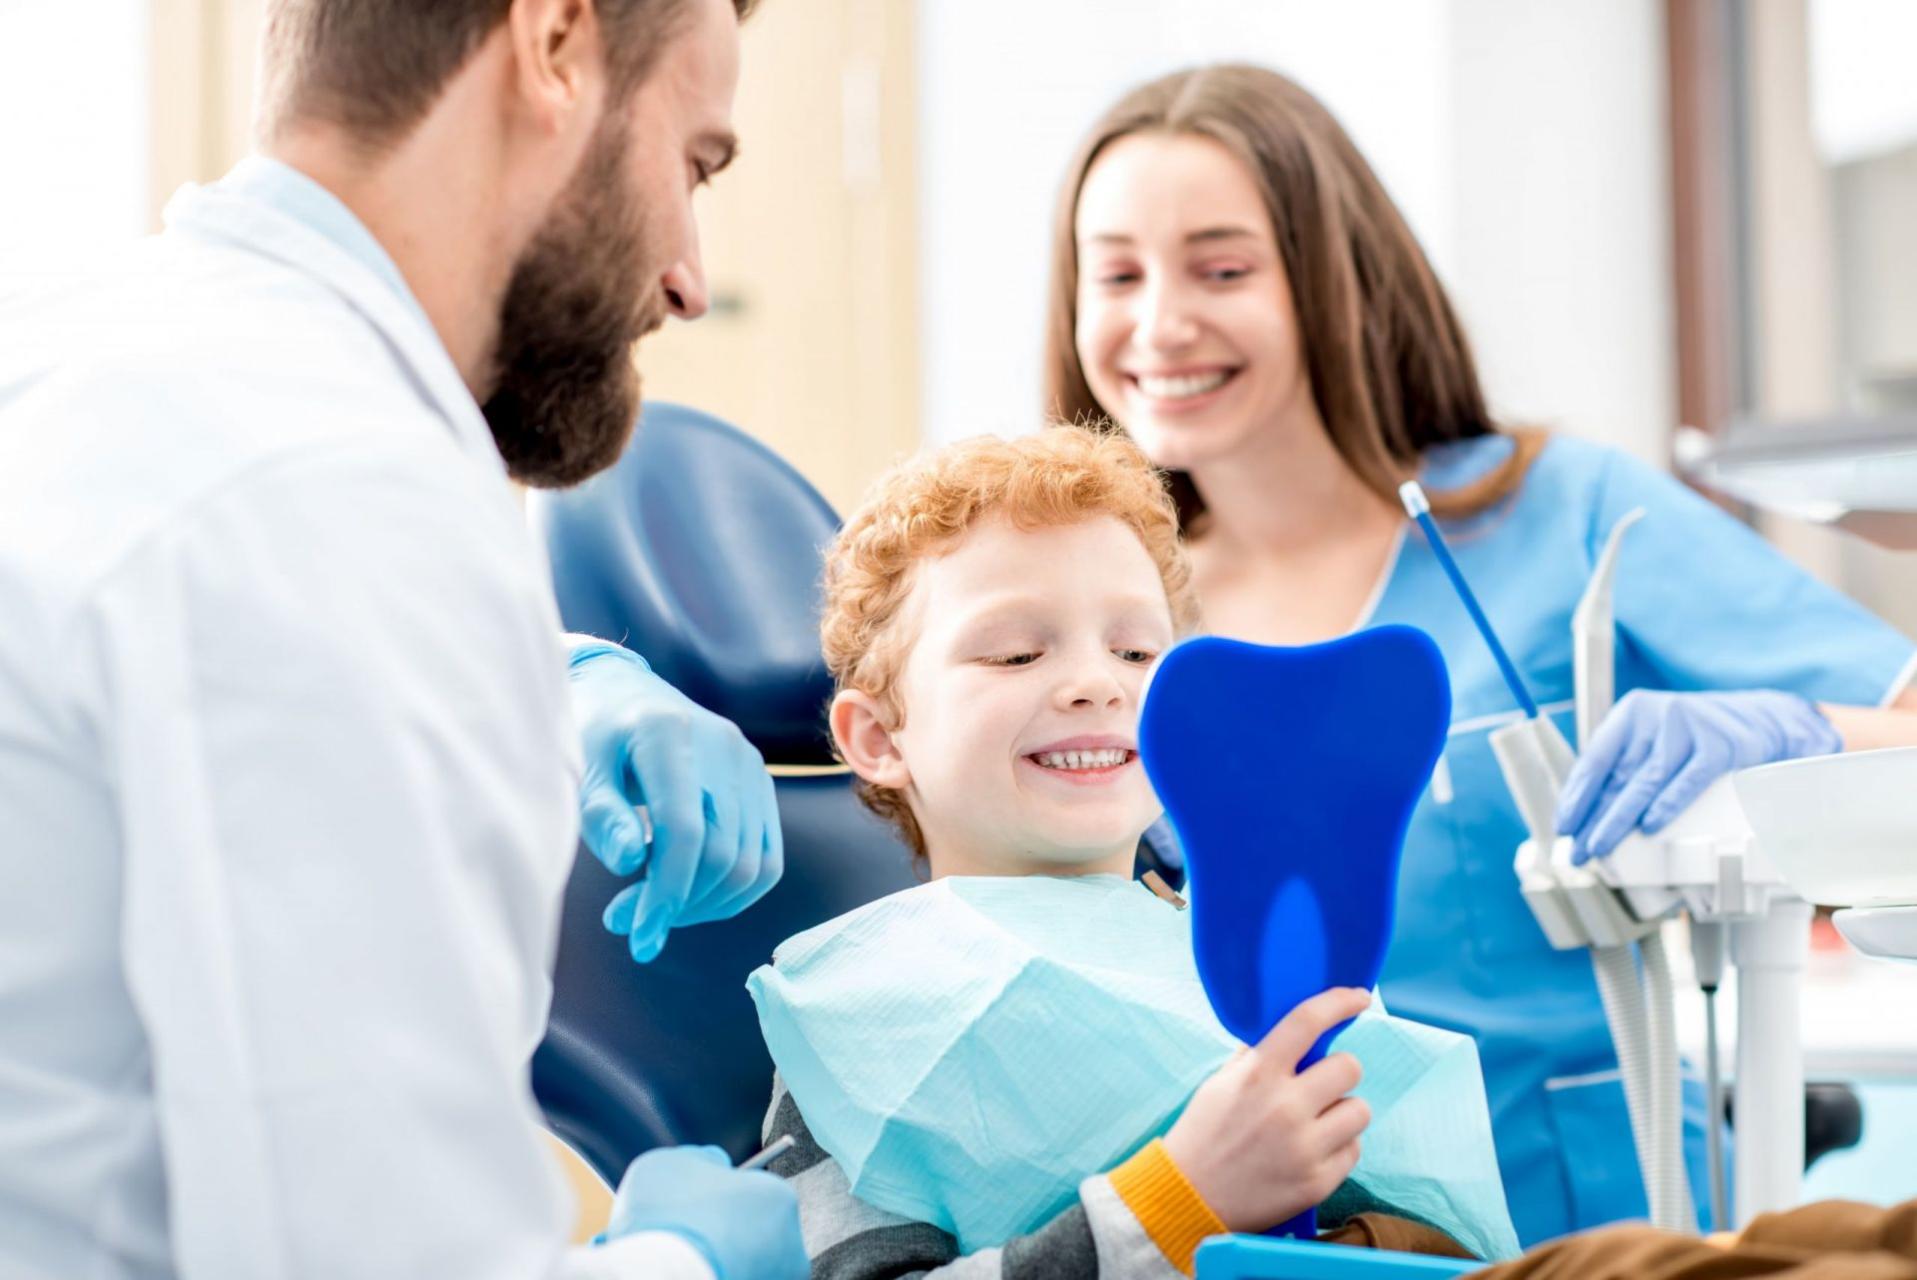 I bambini e la prima visita dal dentista - I consigli per viverla al meglio  - Humanitas Medical Care